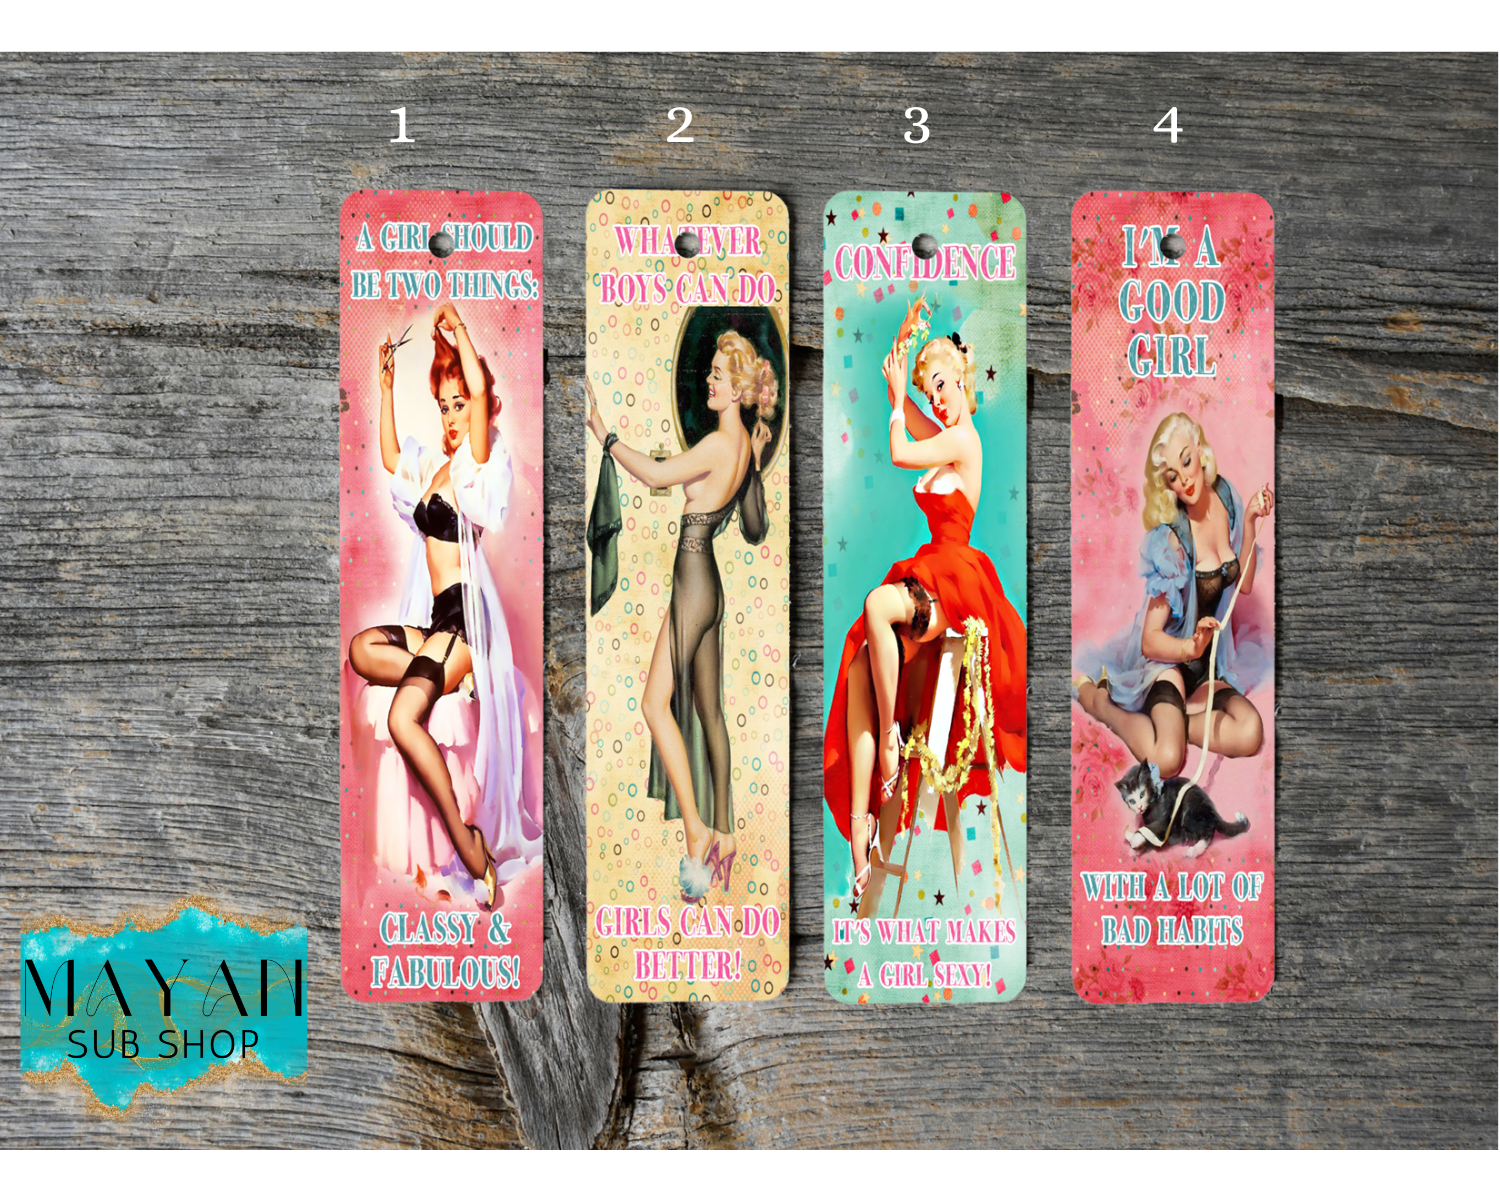 Sexy pin up girl bookmarks. -Mayan Sub Shop